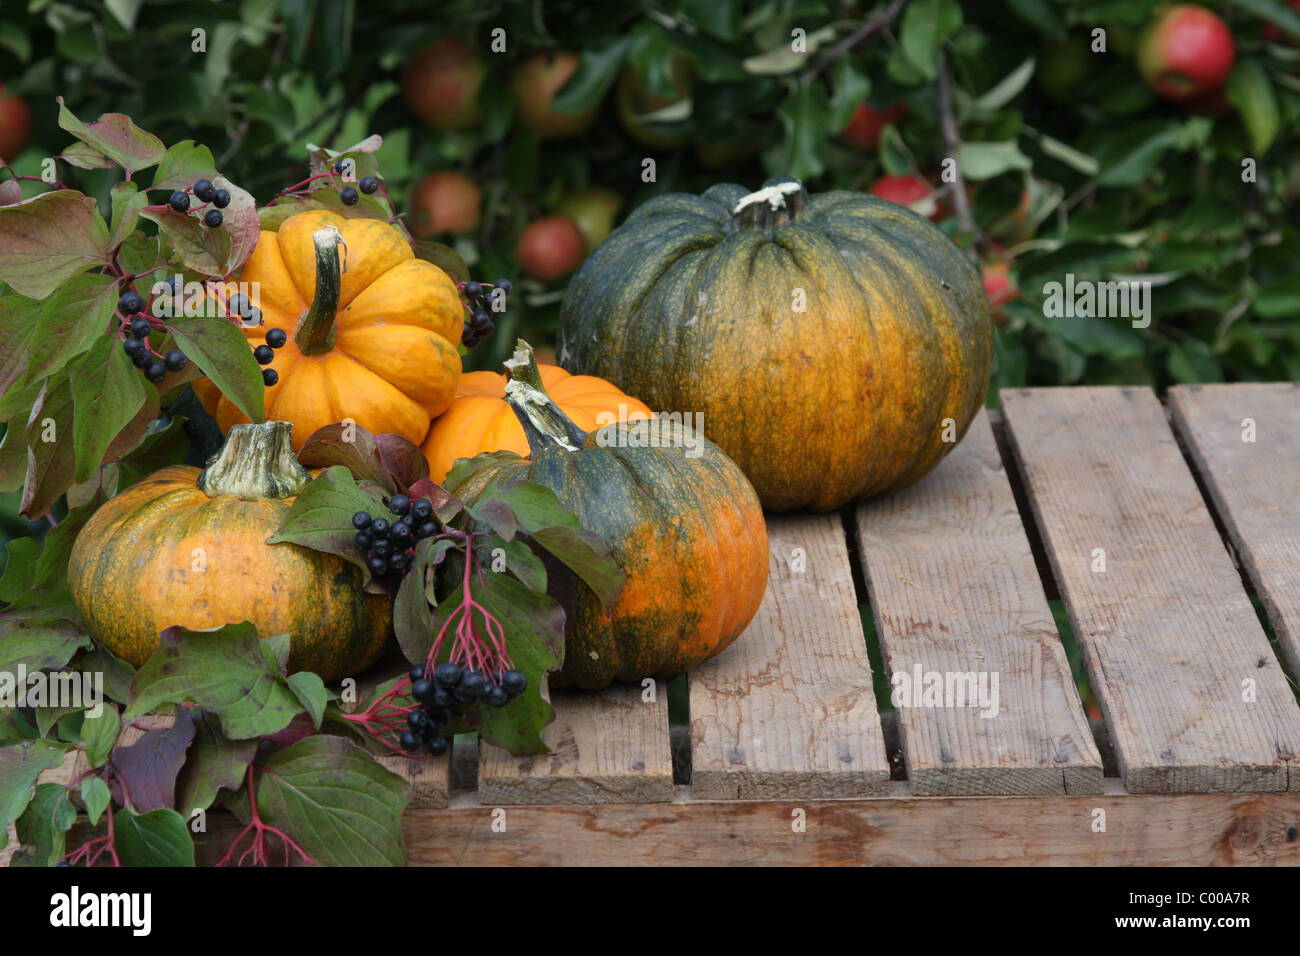 Herbstliches Stilleben, Kuerbisse, Aepfel, Erntedank, Autumn Stil life, Pumpkins, Apples, Harvest festival Stock Photo